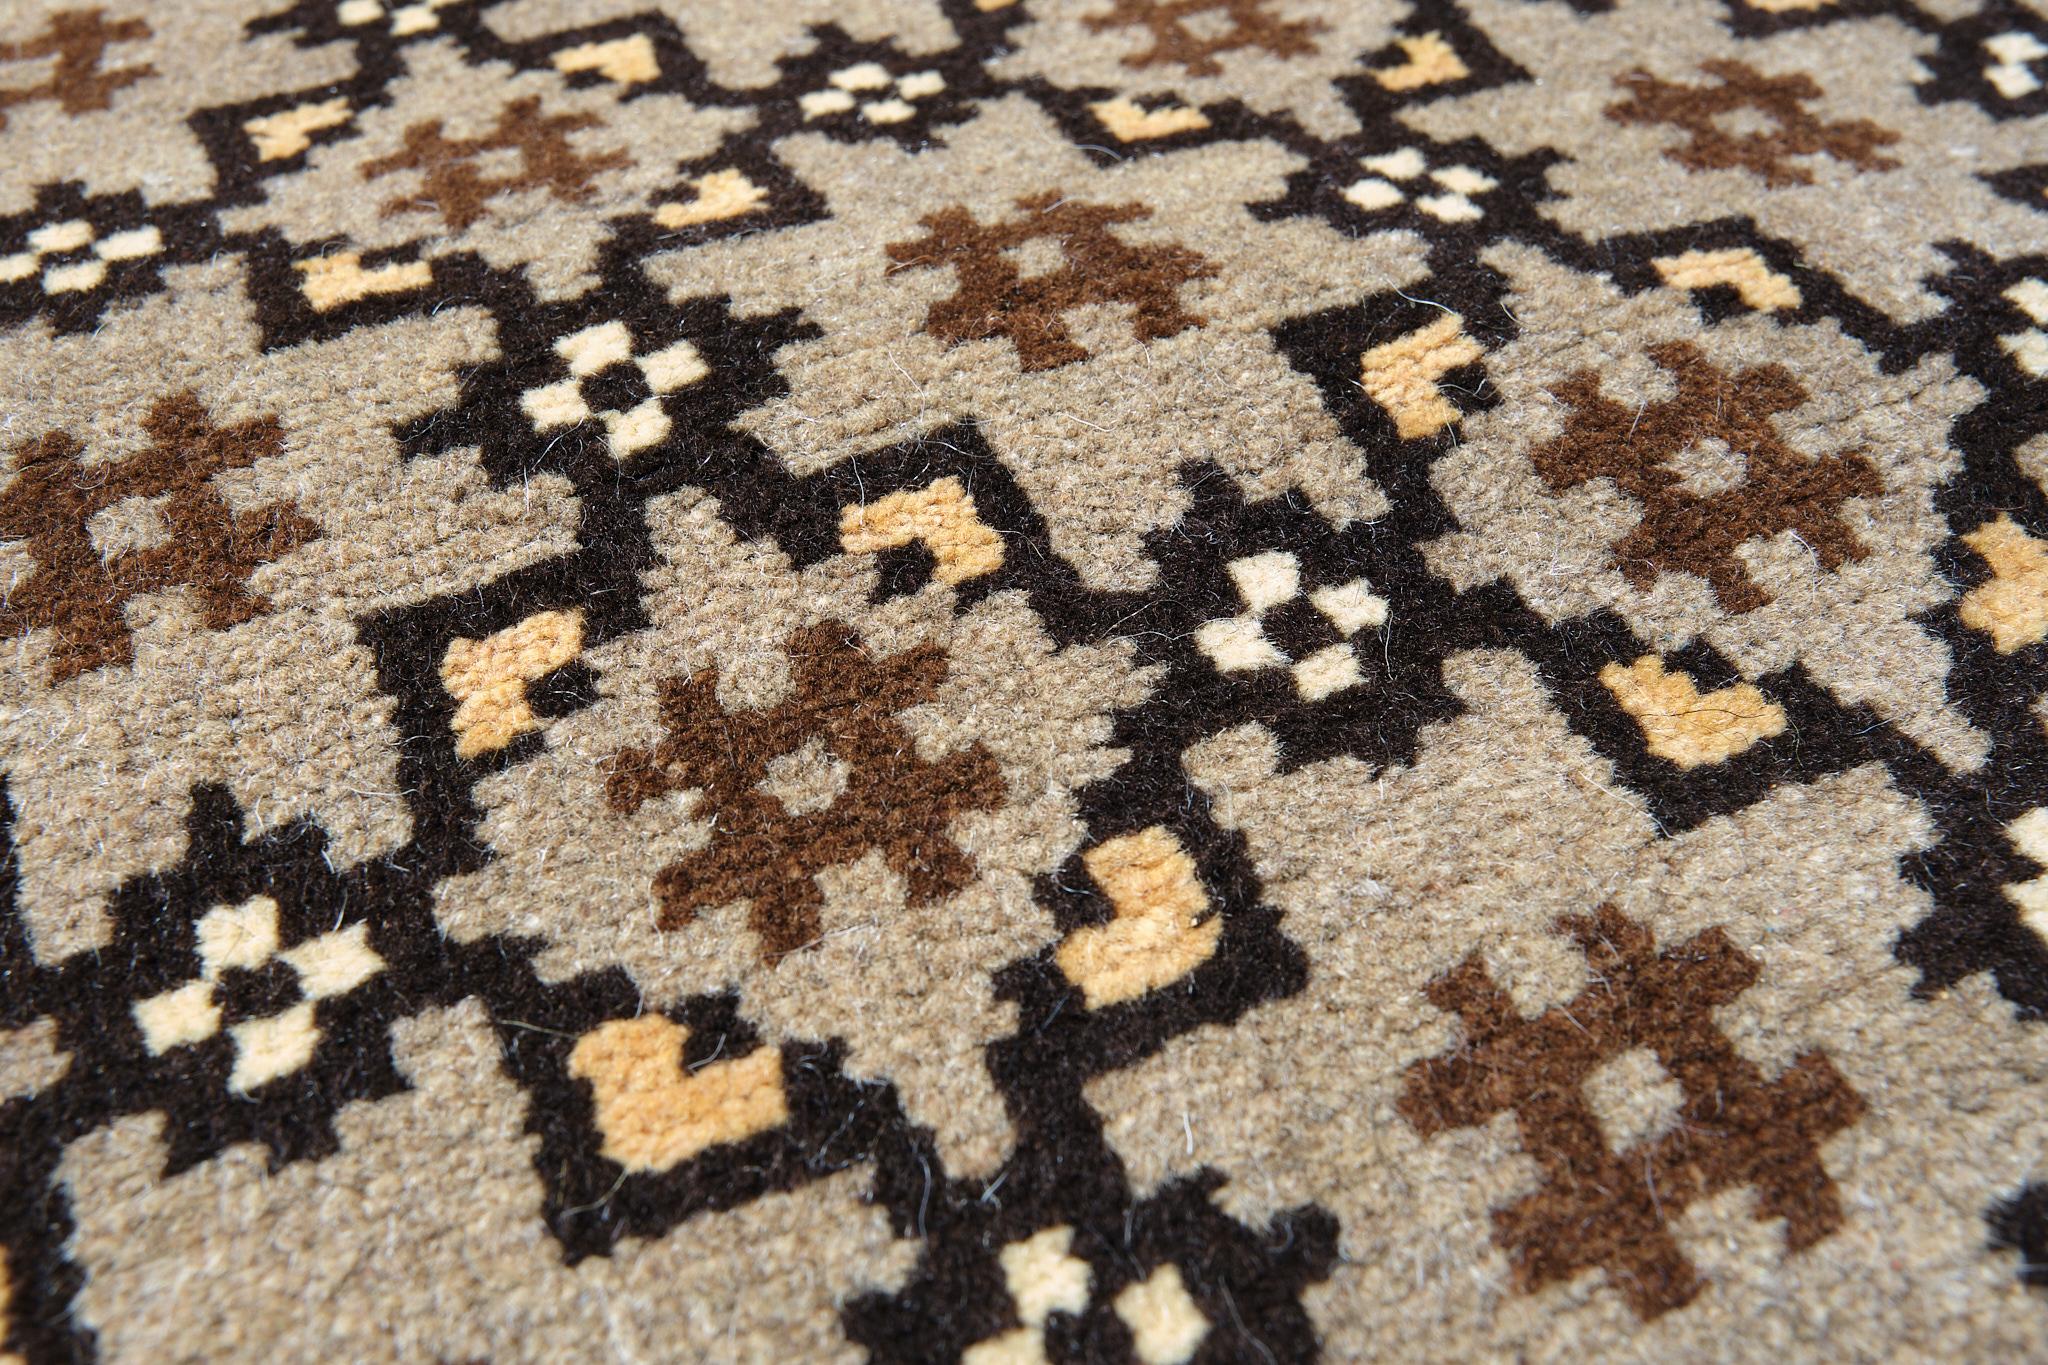 La source du tapis provient du livre Turkish Carpets from the 13th - 18th centuries, Ahmet Ertuğ, 1996 pl.16. Ce tapis du XVe siècle provient de la mosquée d'Ulu, dans la région de Divrigi Sivas, en Anatolie centrale. La période seldjoukide marque